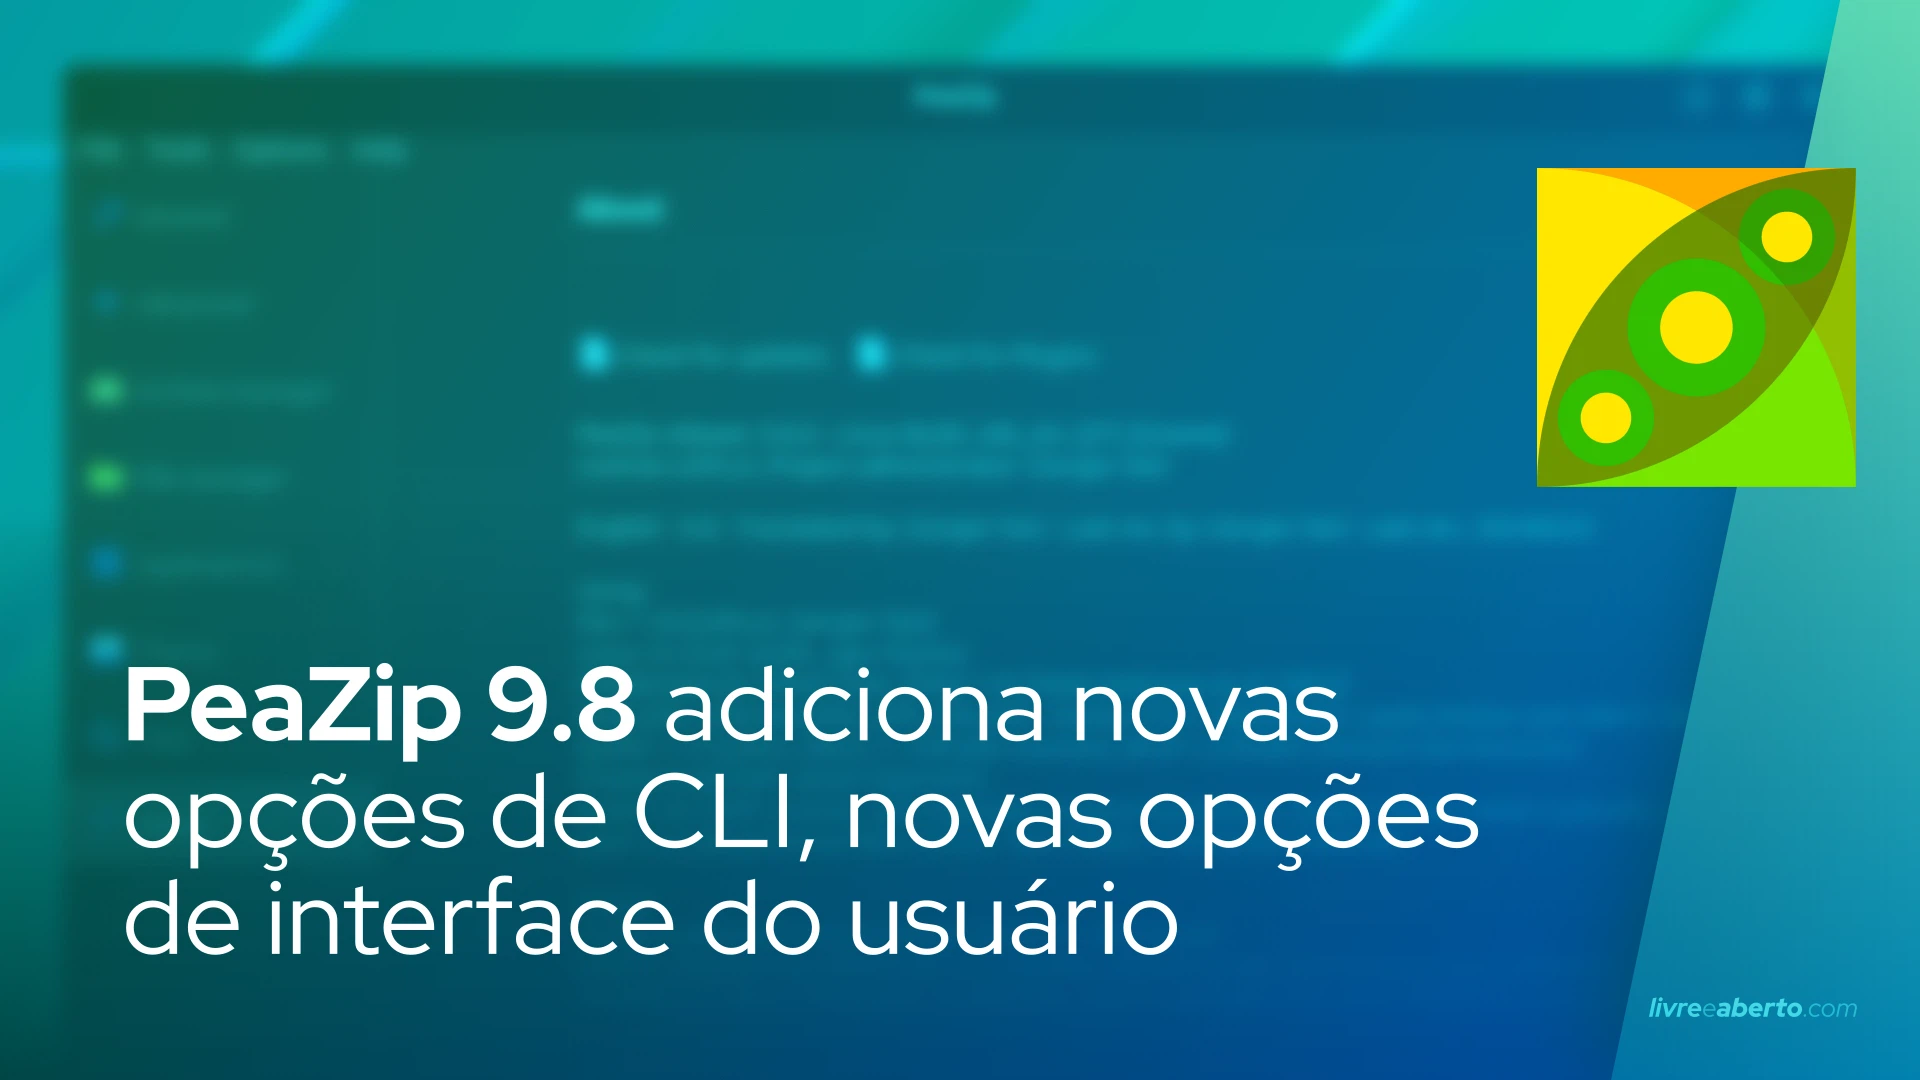 PeaZip 9.8 adiciona novas opções de CLI, novas opções de interface do usuário e tema Tux